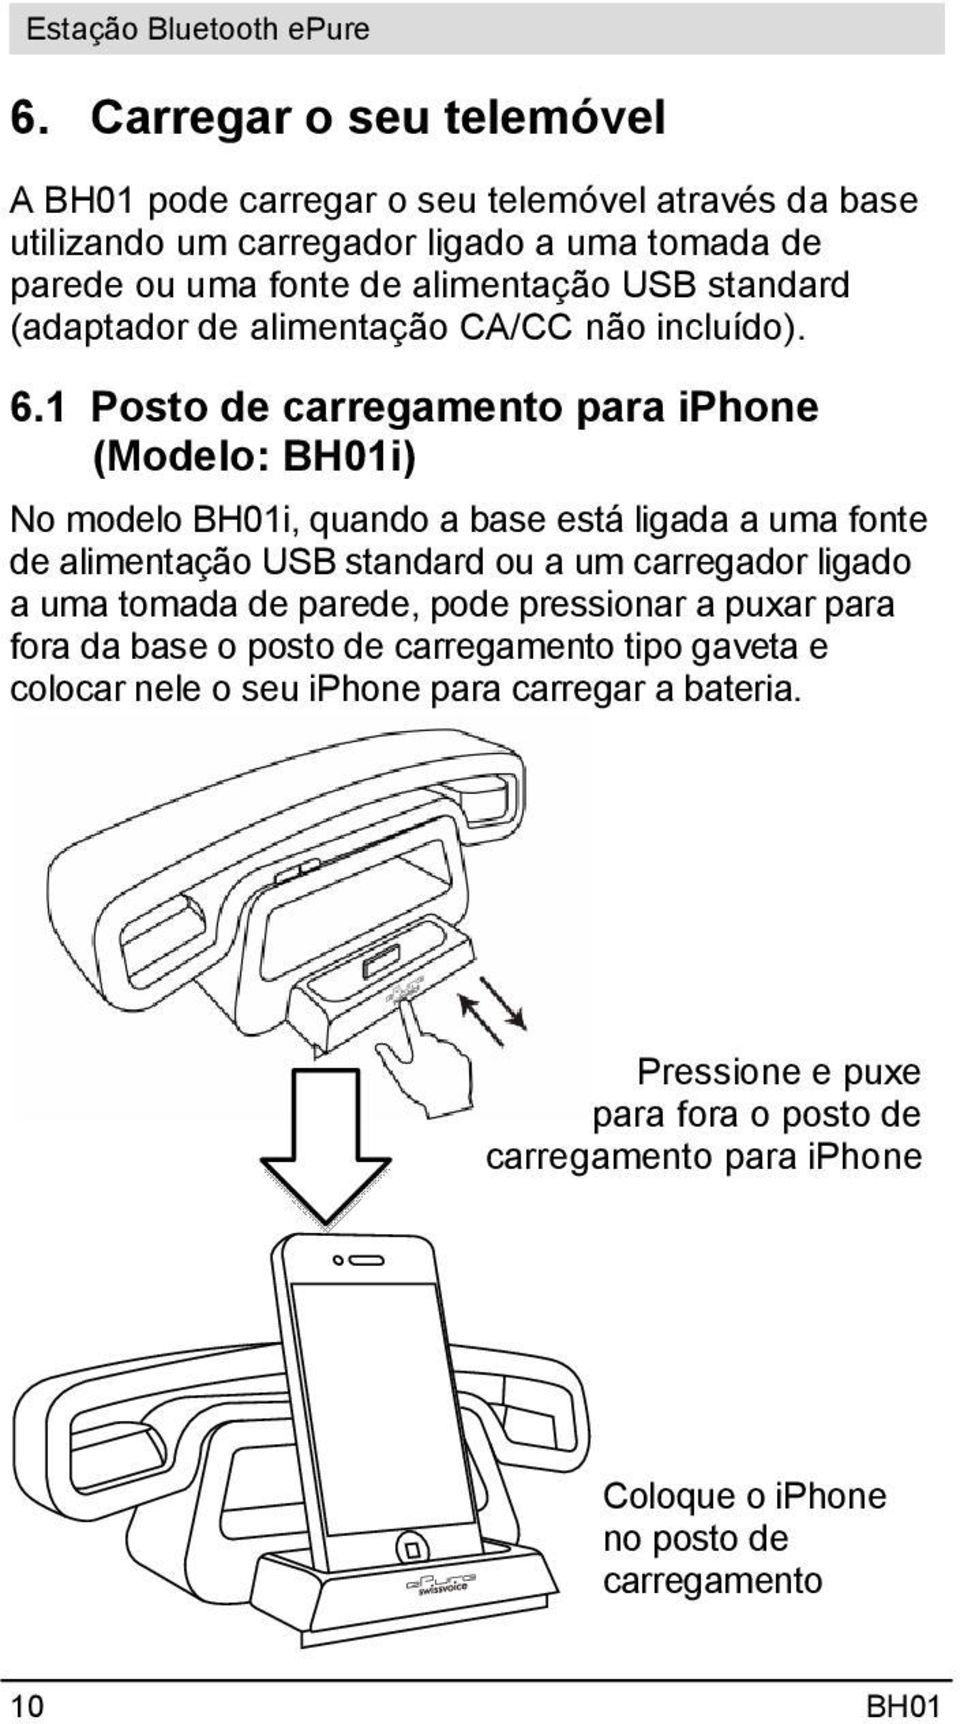 1 Posto de carregamento para iphone (Modelo: BH01i) No modelo BH01i, quando a base está ligada a uma fonte de alimentação USB standard ou a um carregador ligado a